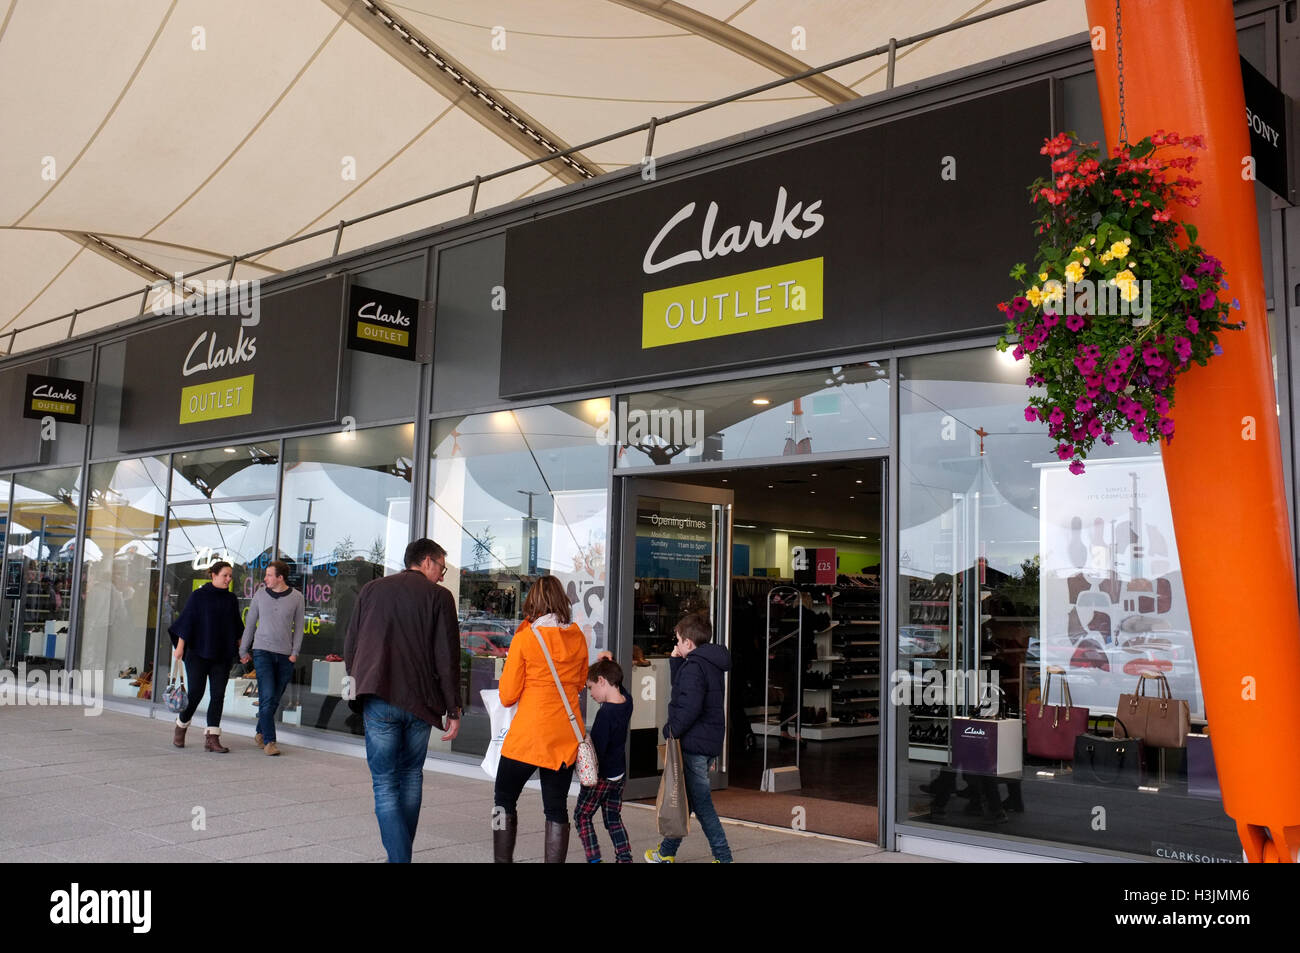 Calzado Clarks tienda outlet el ashford Designer Outlet Moda compleja en el condado de Kent, Reino Unido de octubre de 2016 Fotografía de - Alamy